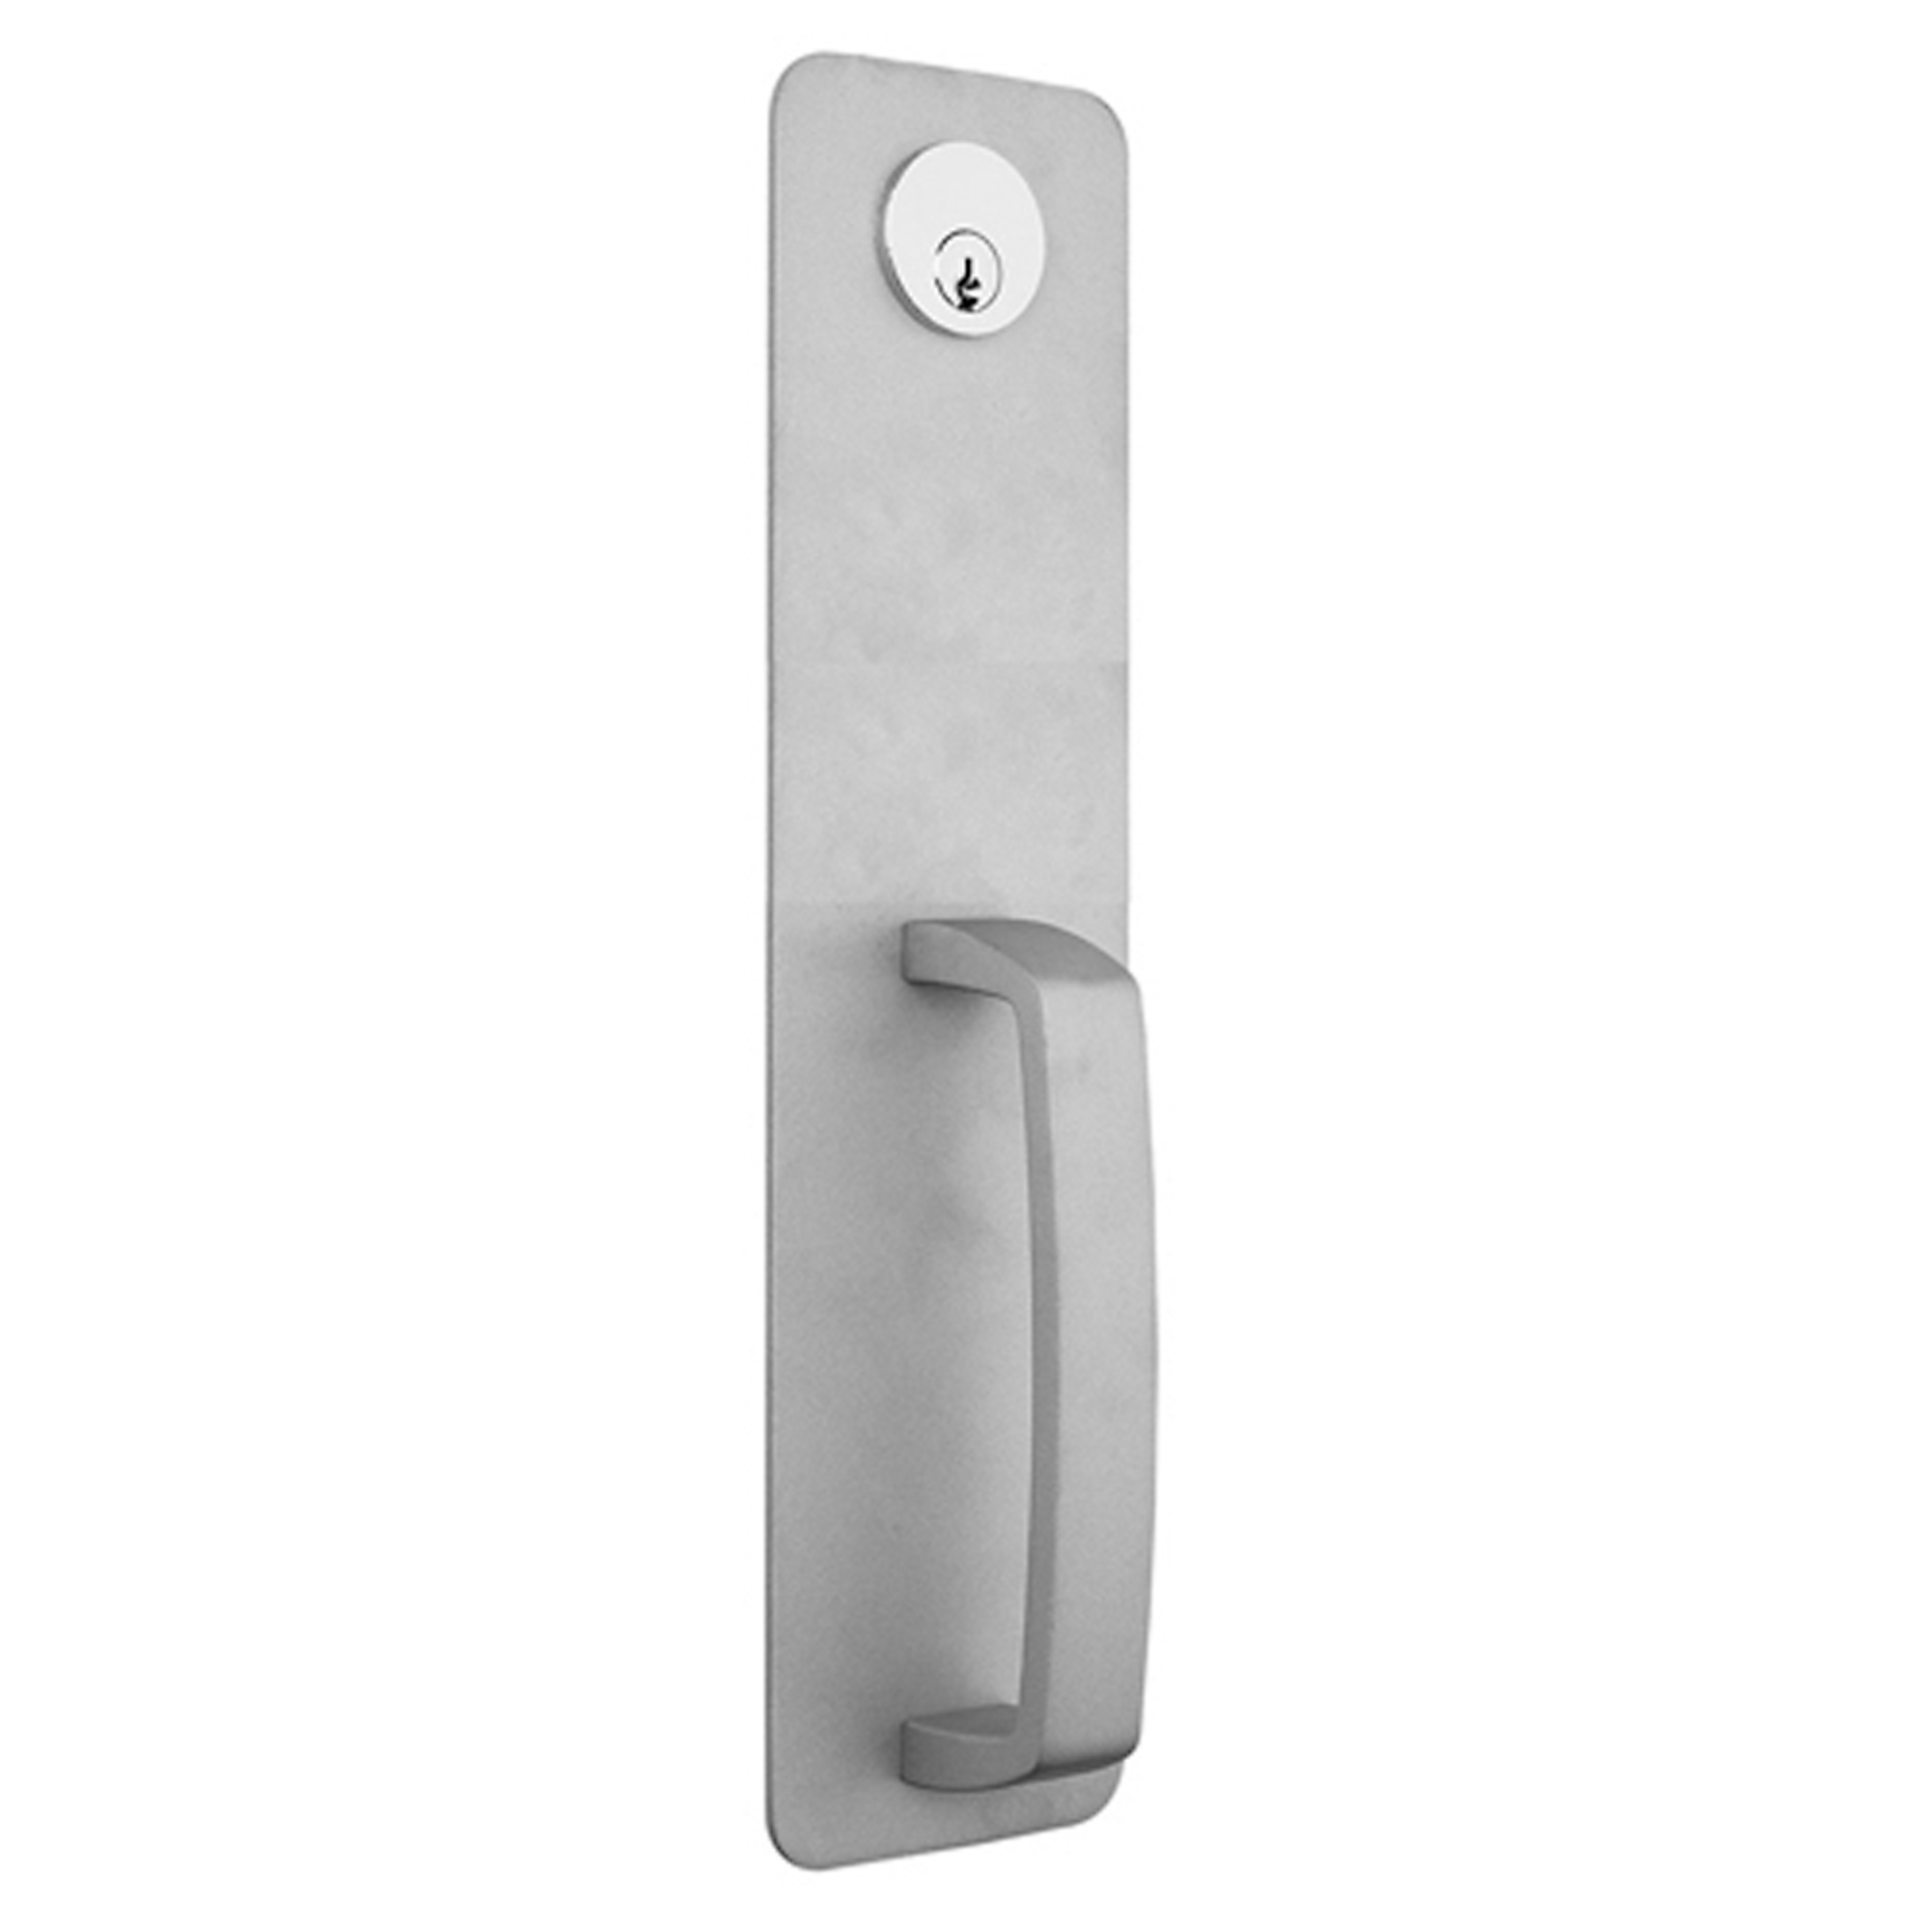 Global Door Controls, Aluminum Night Latch Handleset Trim for Exit Devices, Max. Fits Door Width 48 in, MInch Fits Door Width 30 in, Model TH1100-